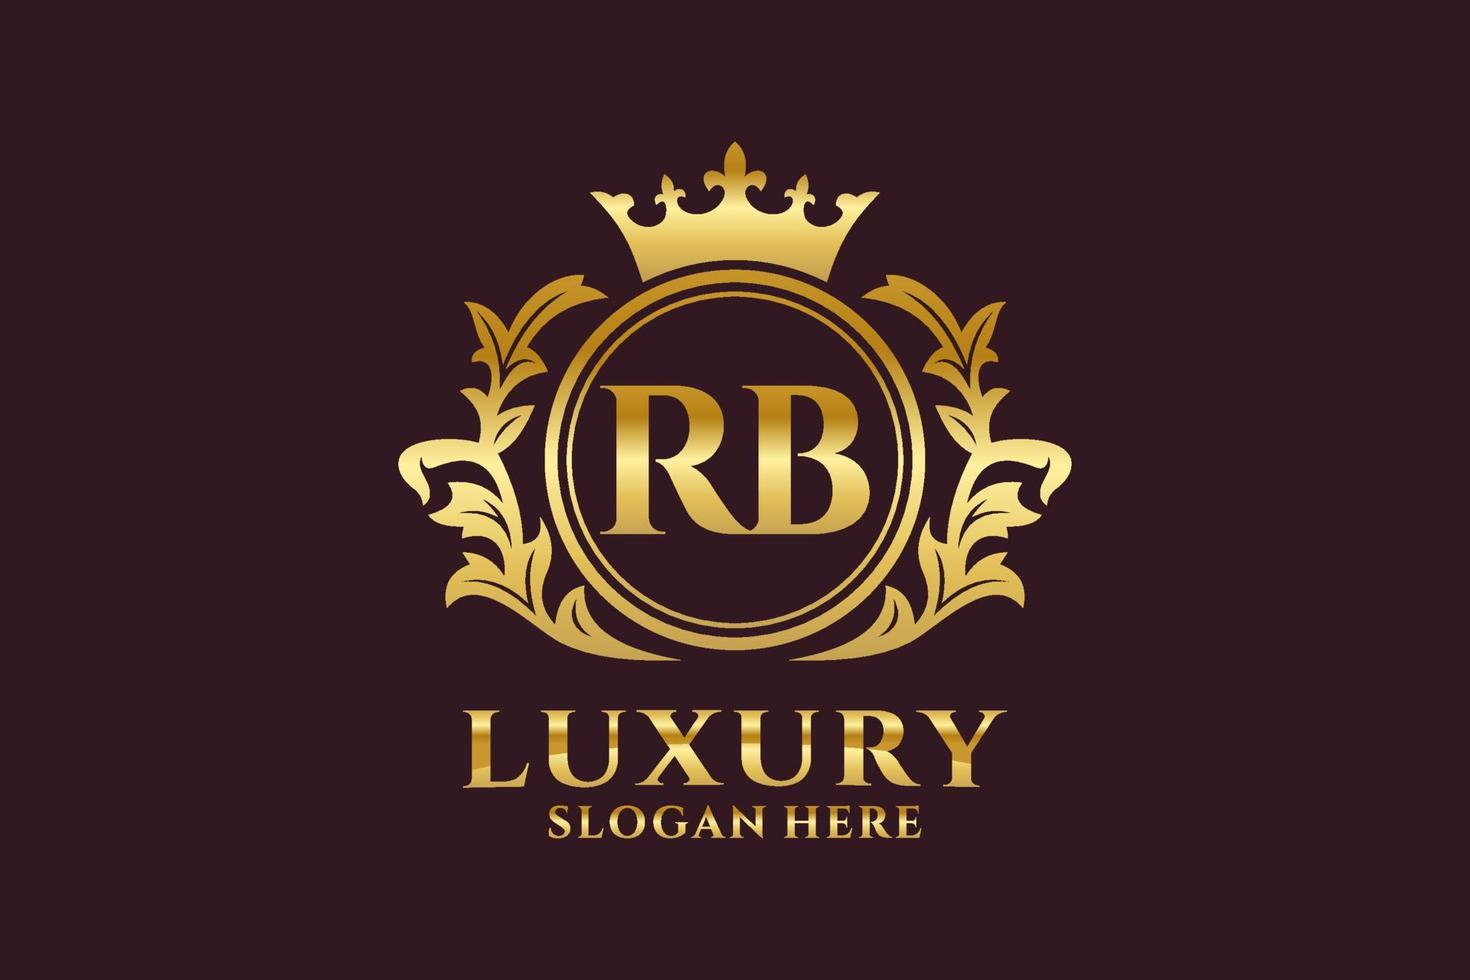 modèle initial de logo de luxe royal de lettre rb dans l'art vectoriel pour des projets de marque luxueux et d'autres illustrations vectorielles.